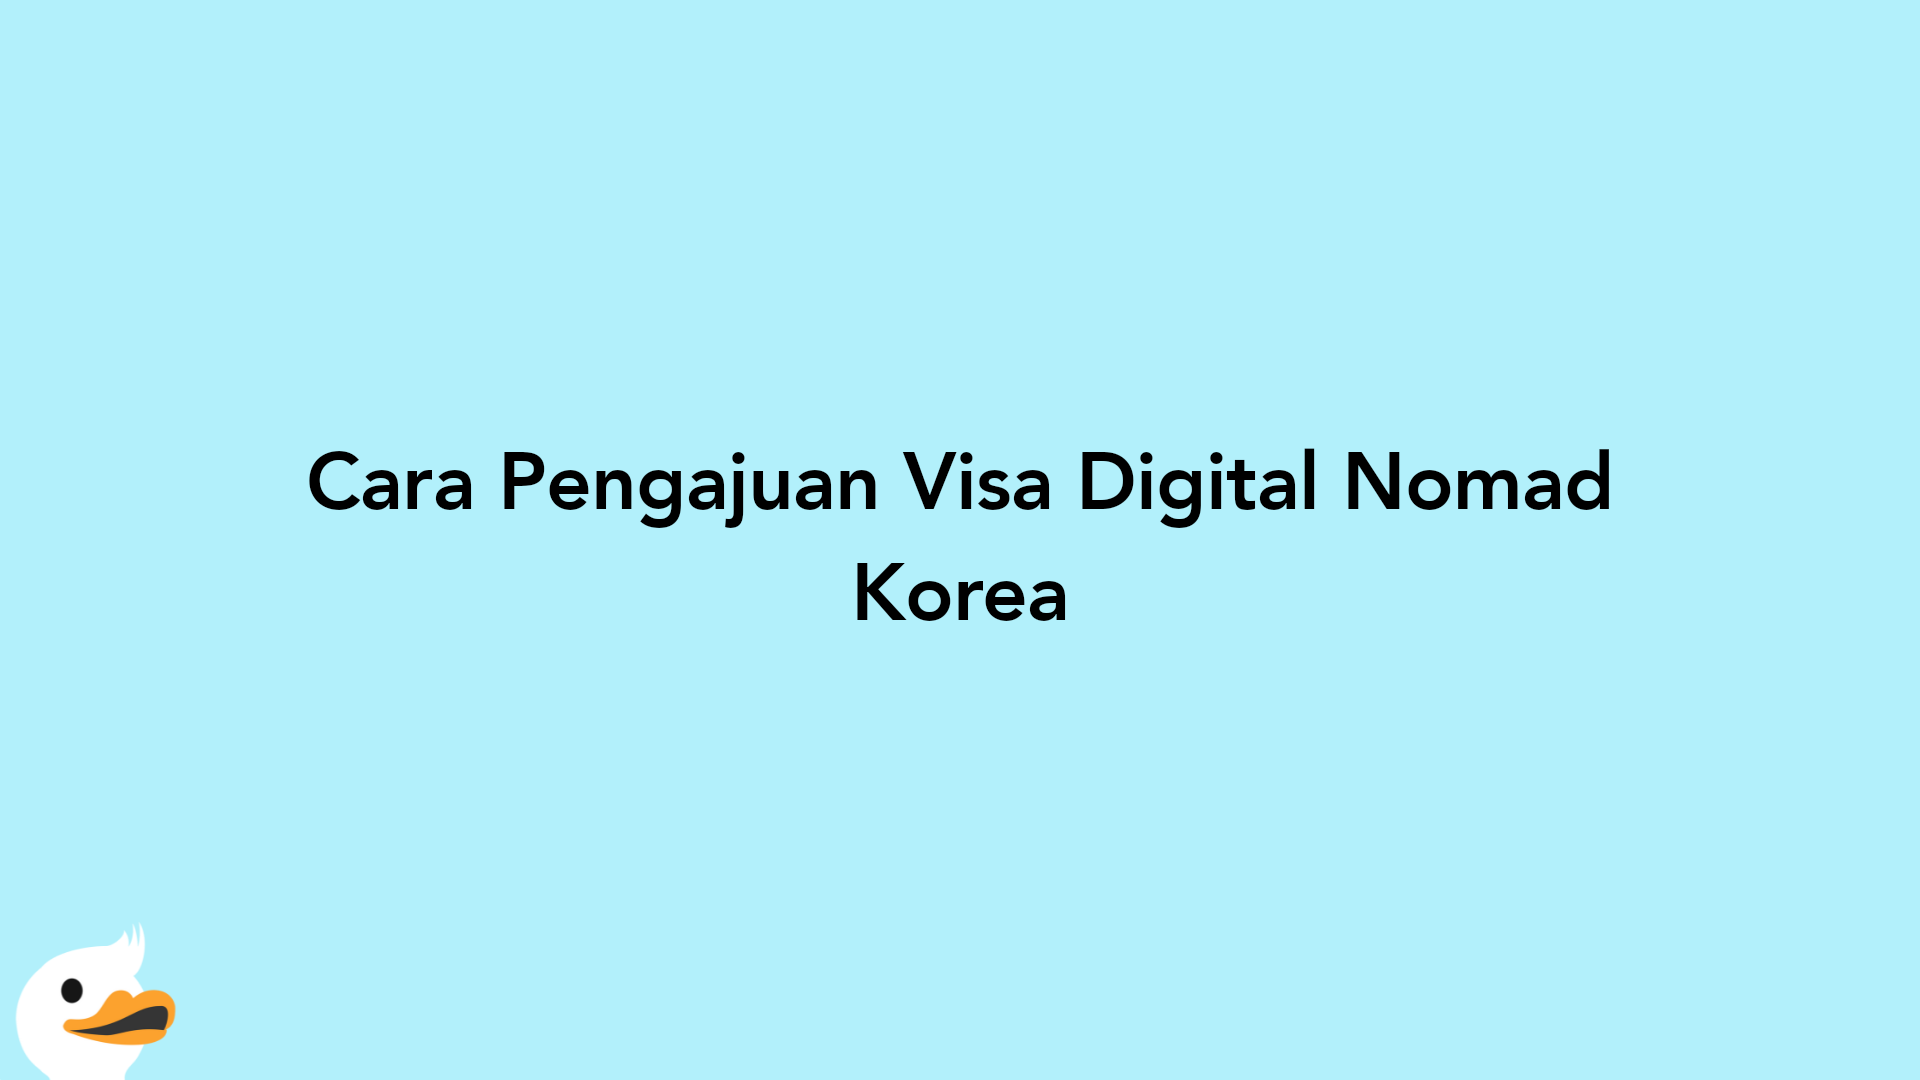 Cara Pengajuan Visa Digital Nomad Korea